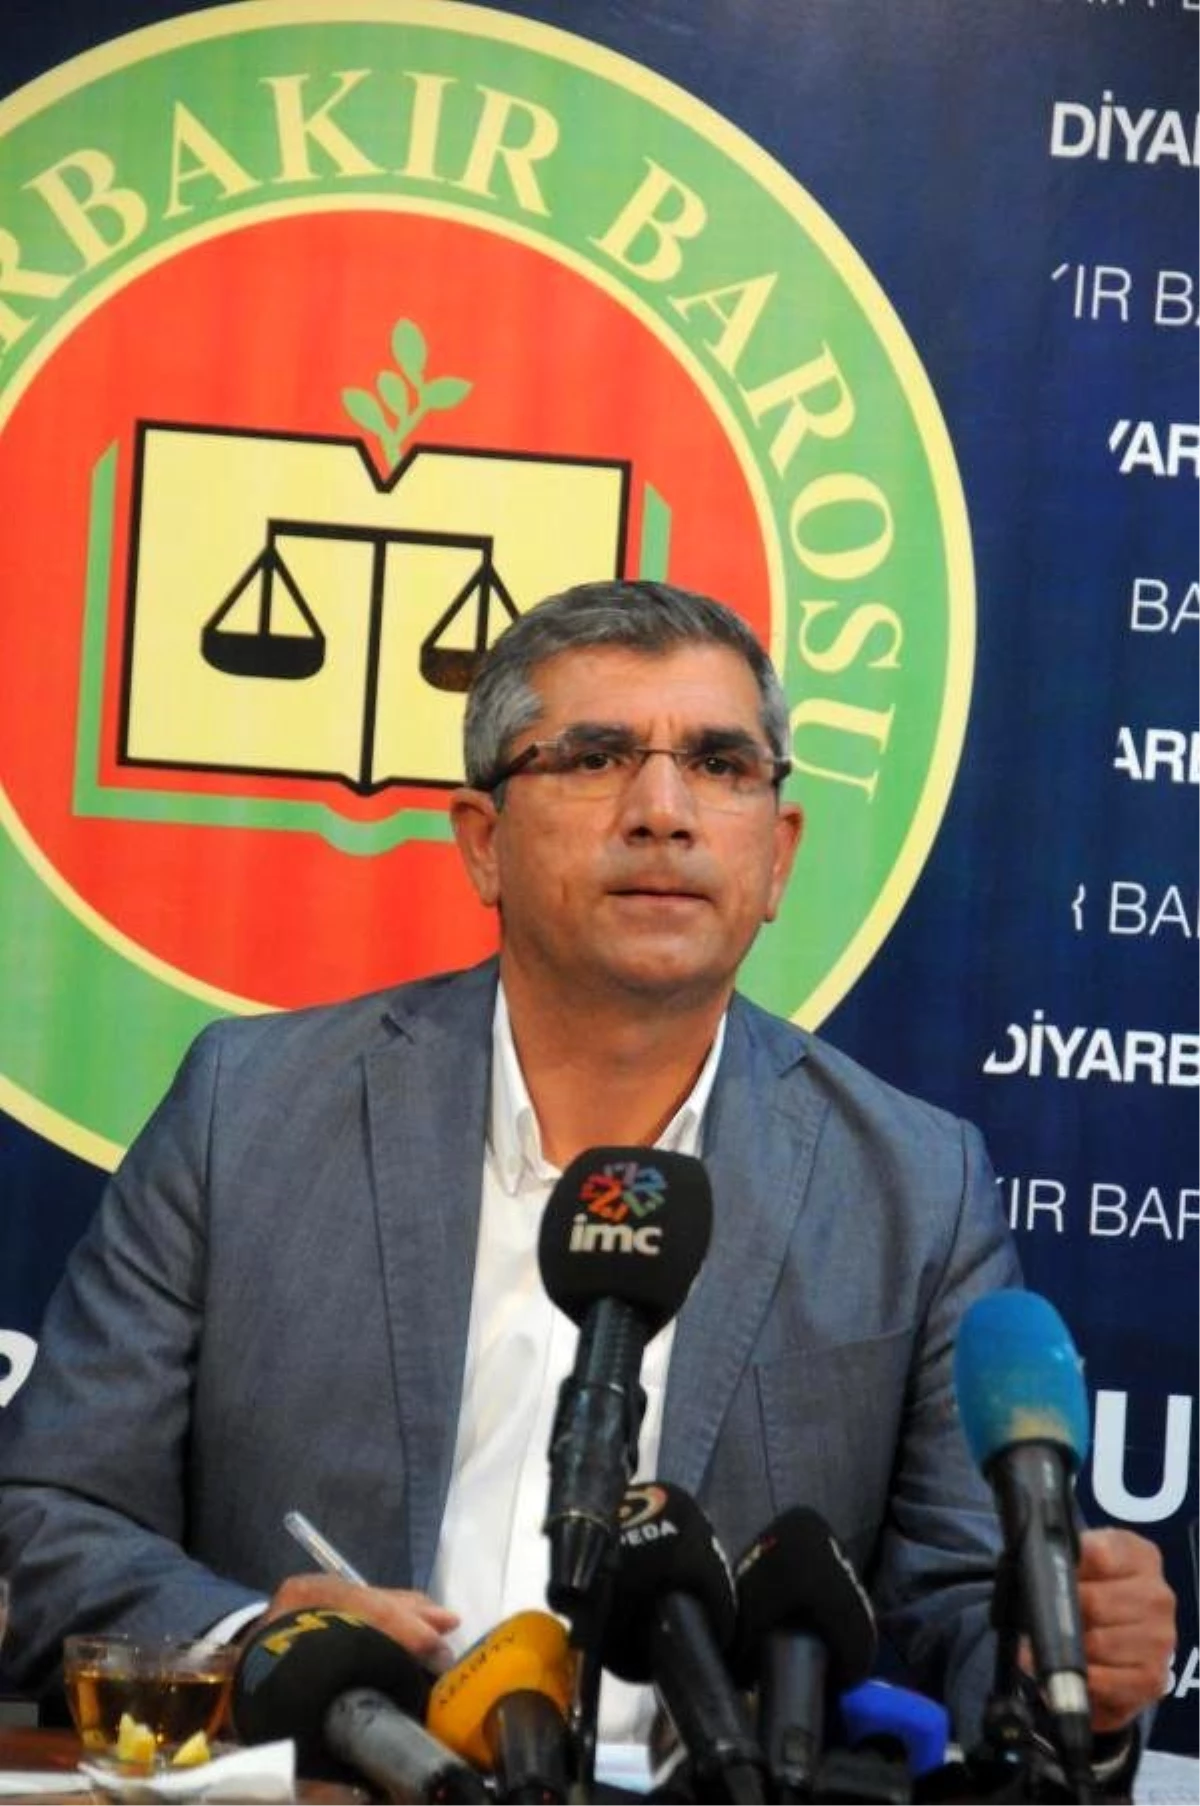 Diyarbakır Baro Başkanı Elçi: Yargısız İnfazlara Son Verilmeli